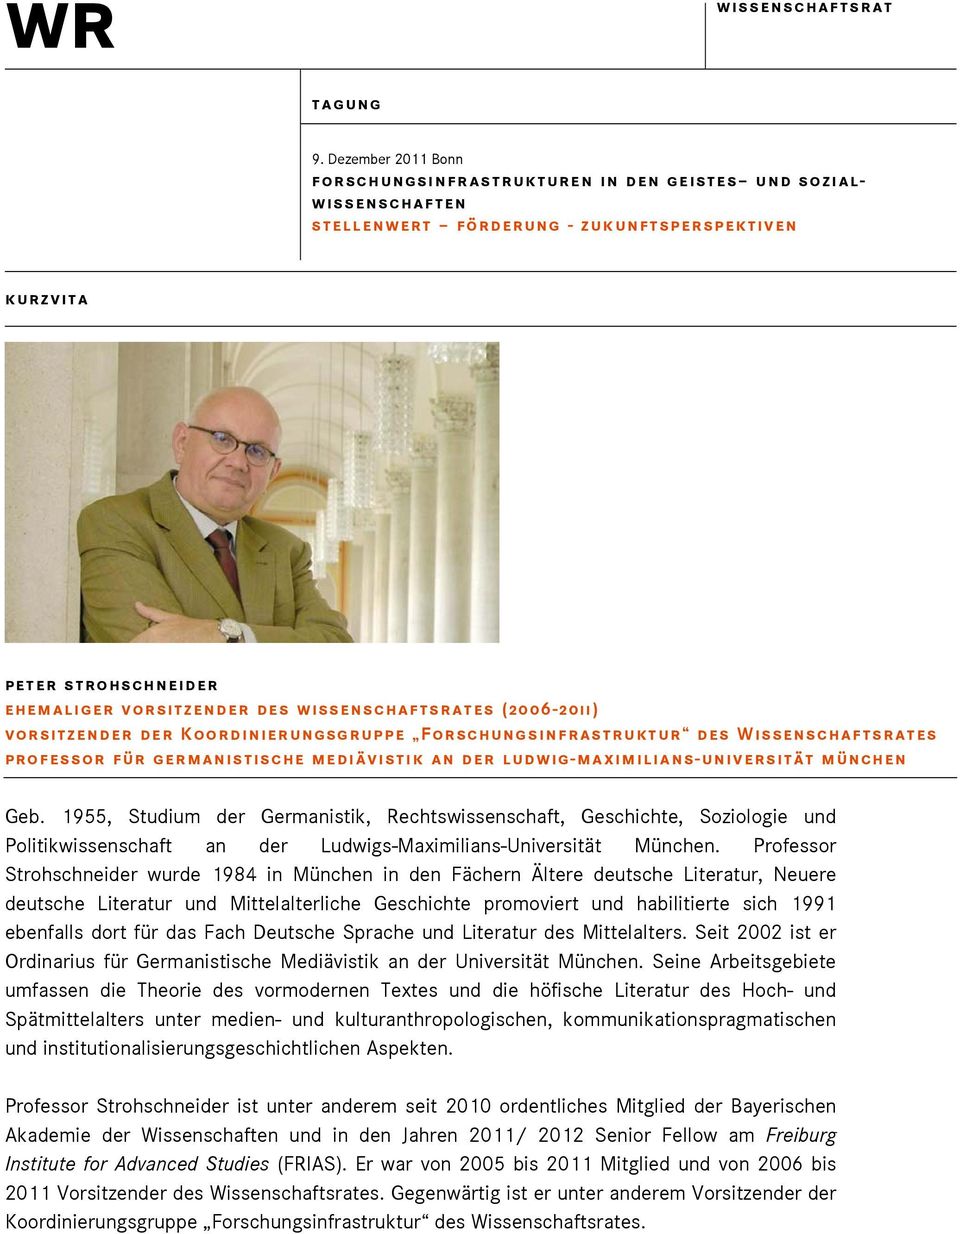 Professor Strohschneider wurde 1984 in München in den Fächern Ältere deutsche Literatur, Neuere deutsche Literatur und Mittelalterliche Geschichte promoviert und habilitierte sich 1991 ebenfalls dort